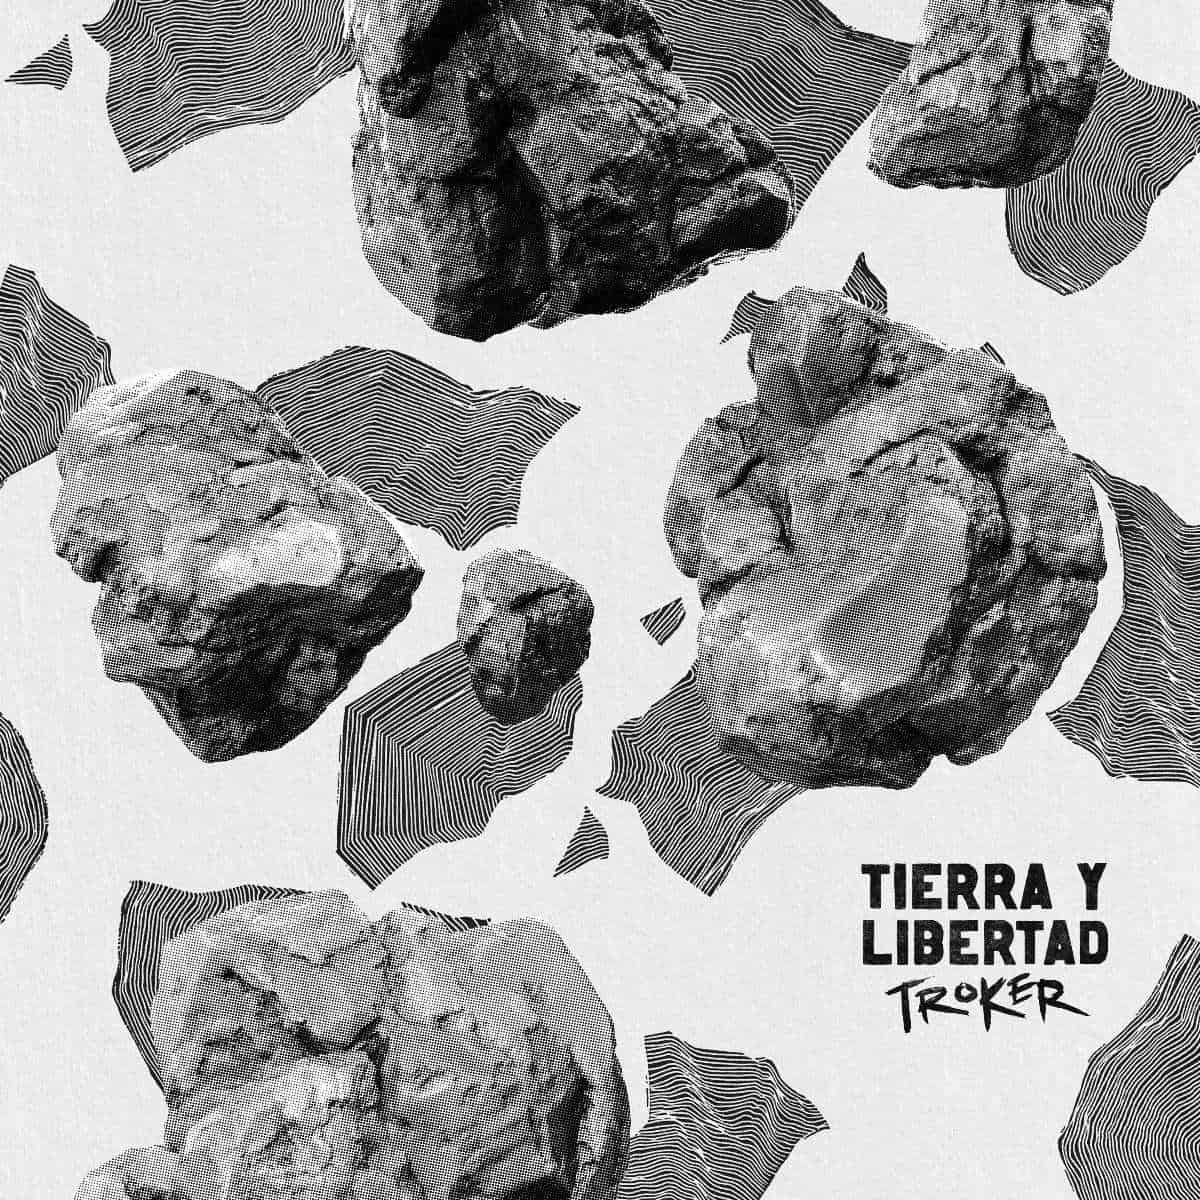 ‘Tierra y libertad’, el álbum de jazz y mariachi con el que la banda Troker celebra sus 20 años